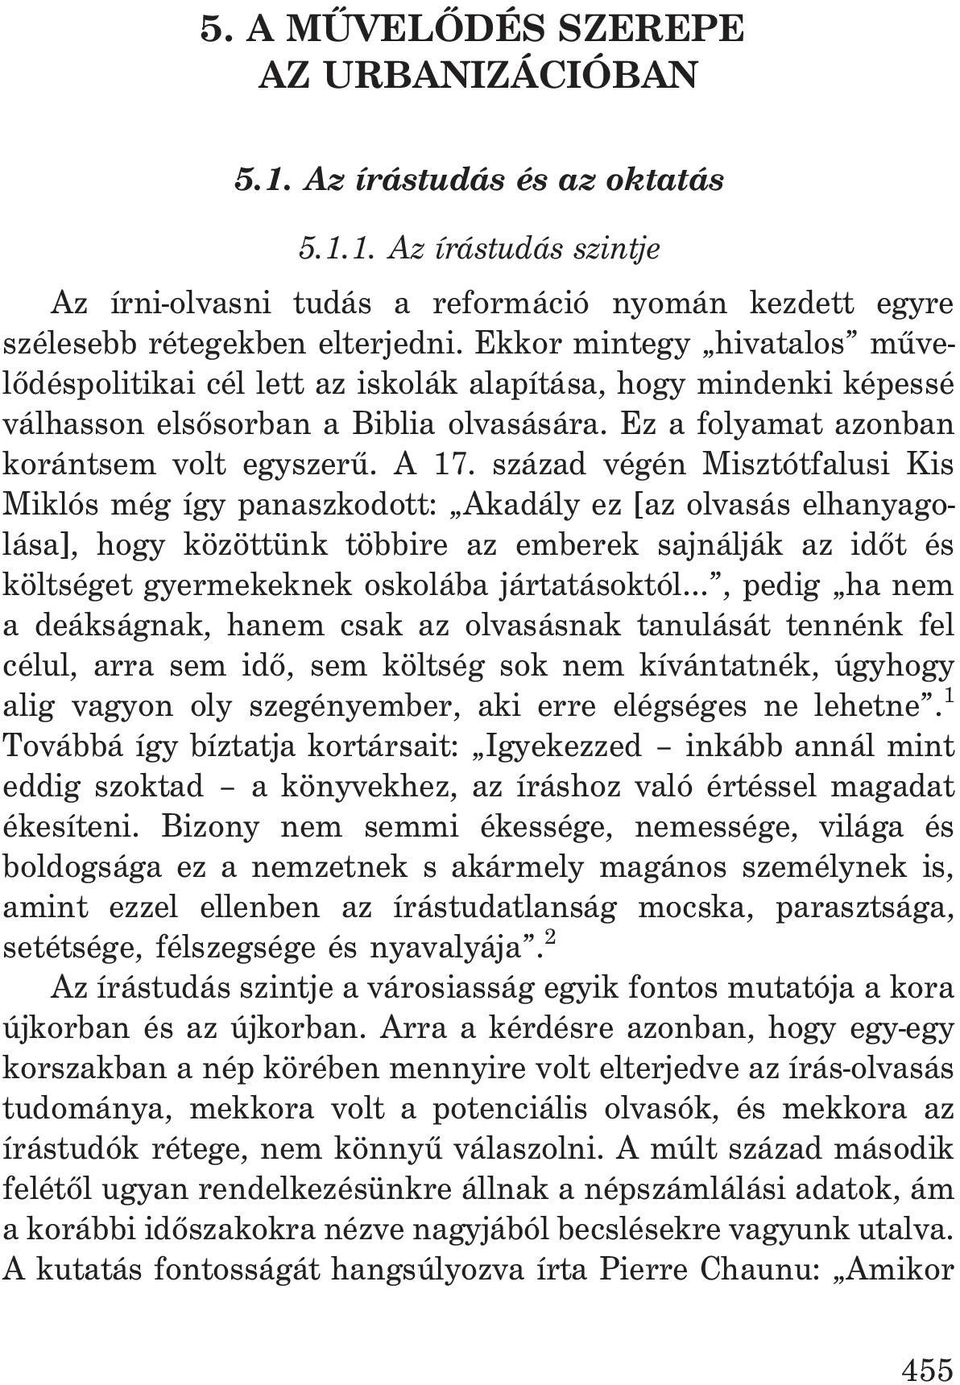 század végén Misztótfalusi Kis Miklós még így panaszkodott: Akadály ez [az olvasás elhanyagolása], hogy közöttünk többire az emberek sajnálják az idõt és költséget gyermekeknek oskolába jártatásoktól.